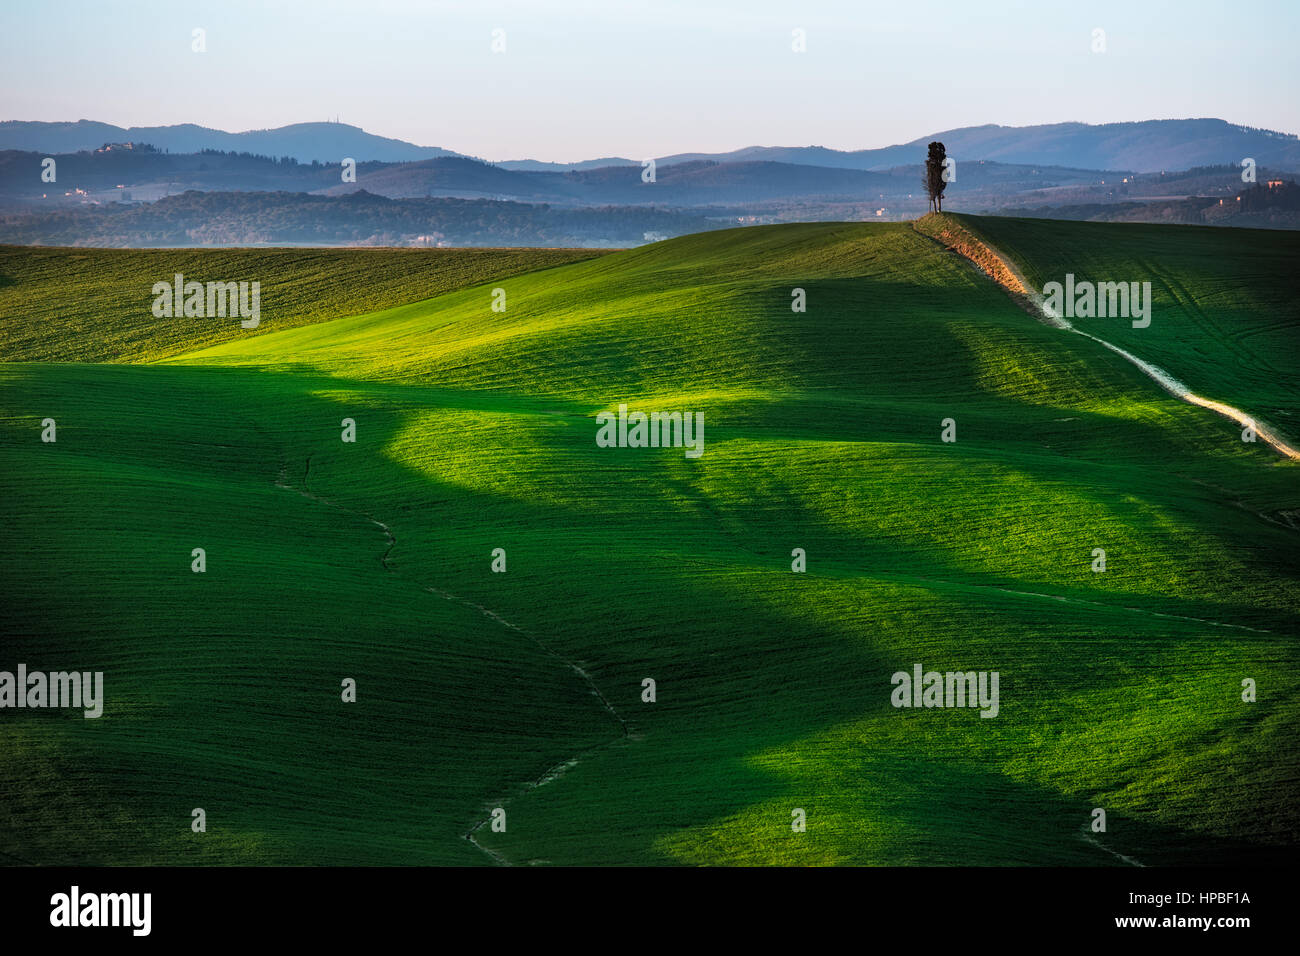 Campagna Toscana colline del paesaggio collinare, cipresso e campi verdi sul tramonto. Siena, Crete Senesi. L'Italia, l'Europa. Foto Stock